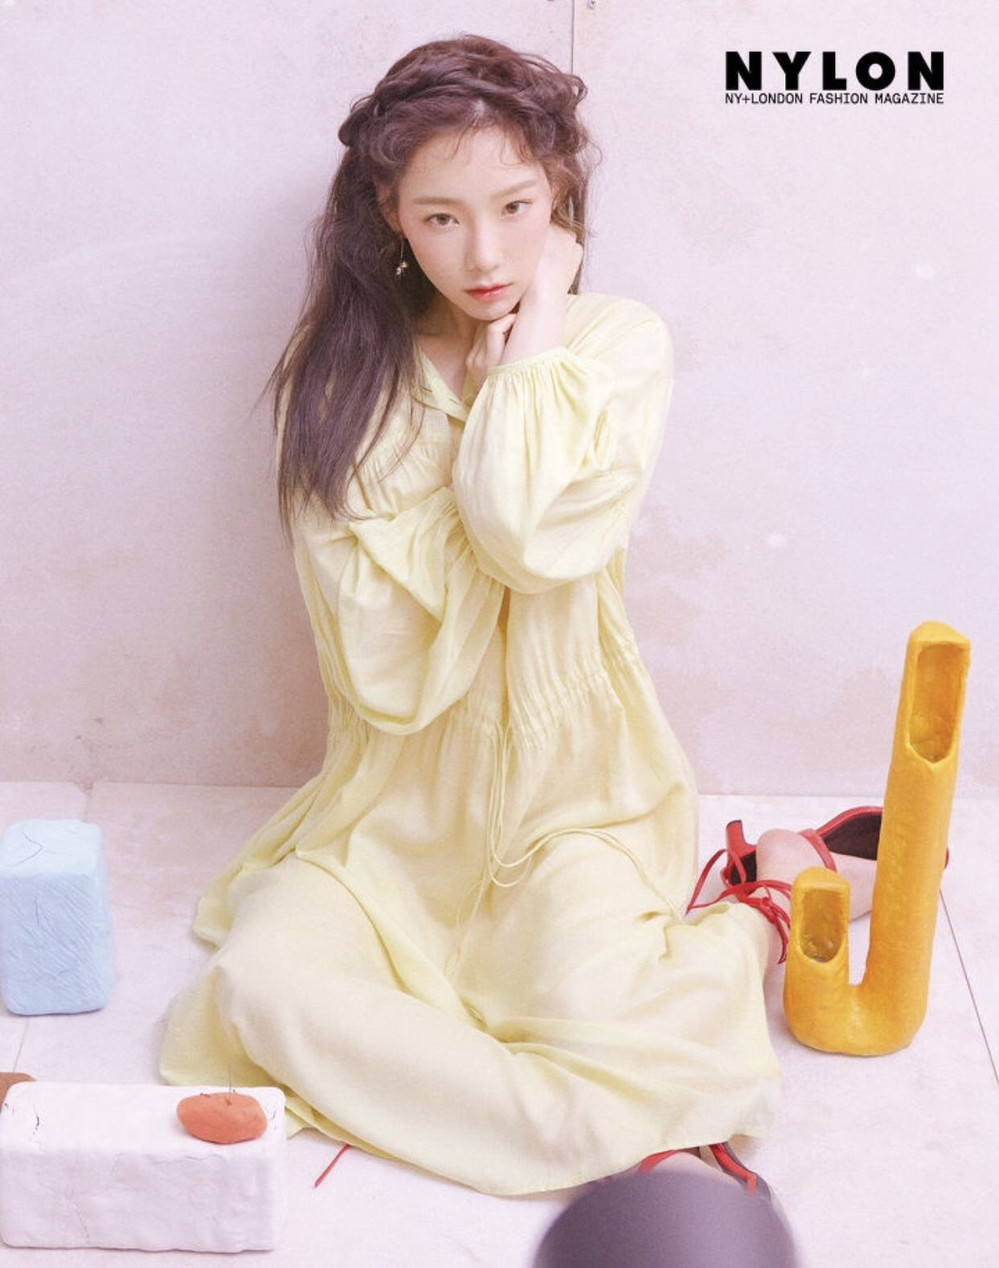 
Khi chọn váy màu nhạt hơn, Taeyeon trông cũng dịu dàng, đằm thắm. (Ảnh: Pinterest)